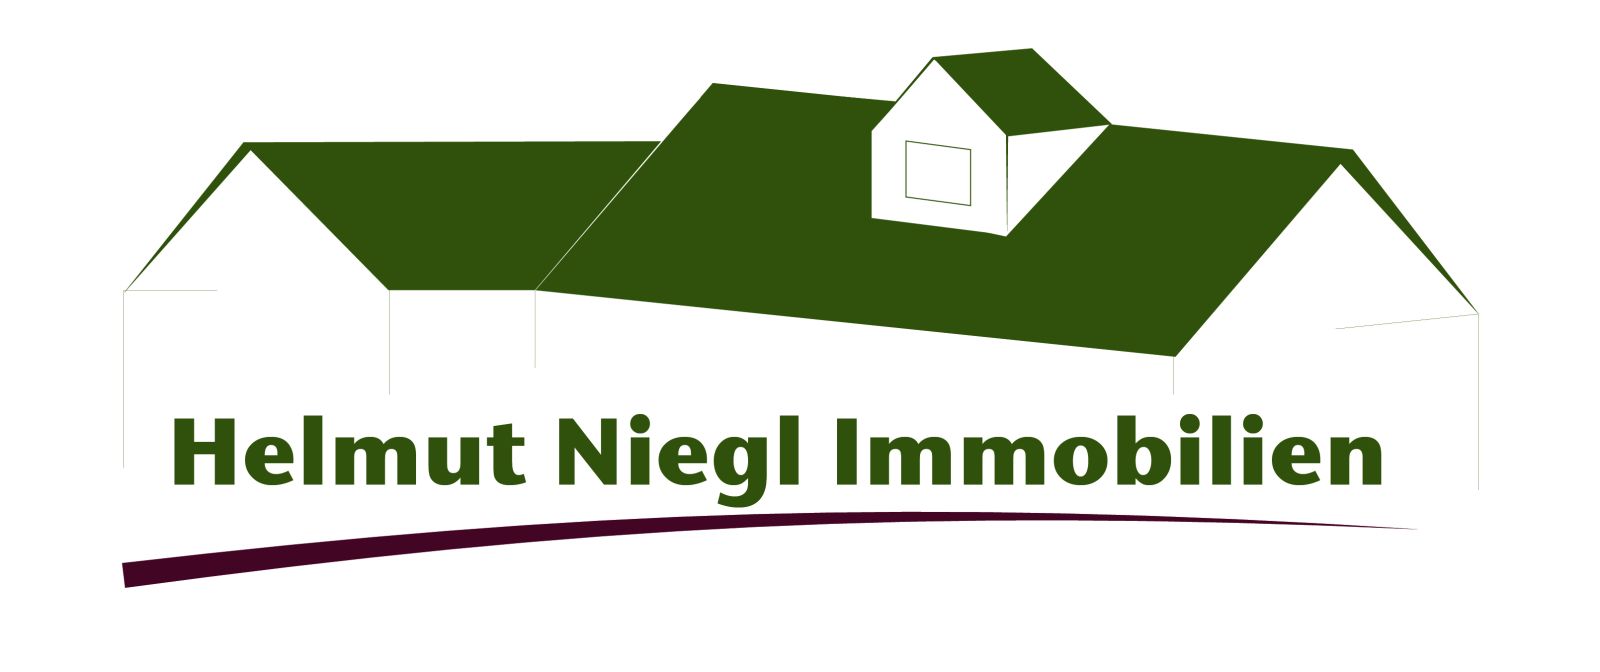 Helmut Niegl Immobilien - Ihr Immobilienmakler in folgenden Städten / Regionen und Landkreisen für Sie tätig